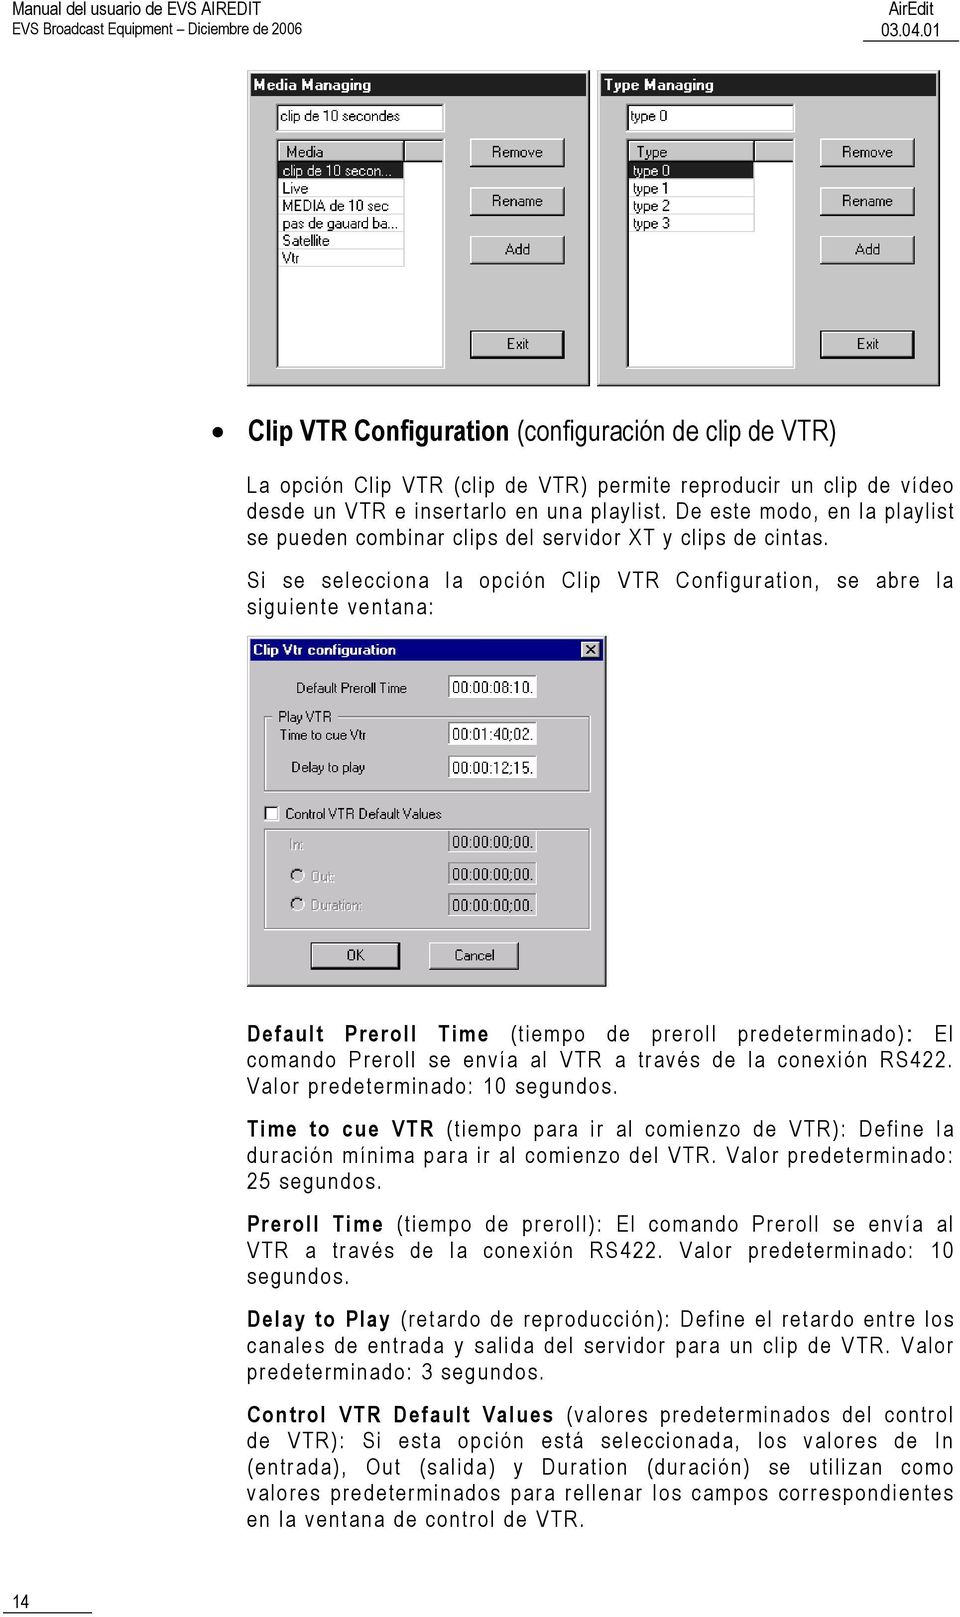 Si se selecciona la opción Clip VTR Configuration, se abre la siguiente ventana: Default Preroll Time (tiempo de preroll predeterminado): El comando Preroll se envía al VTR a través de la conexión